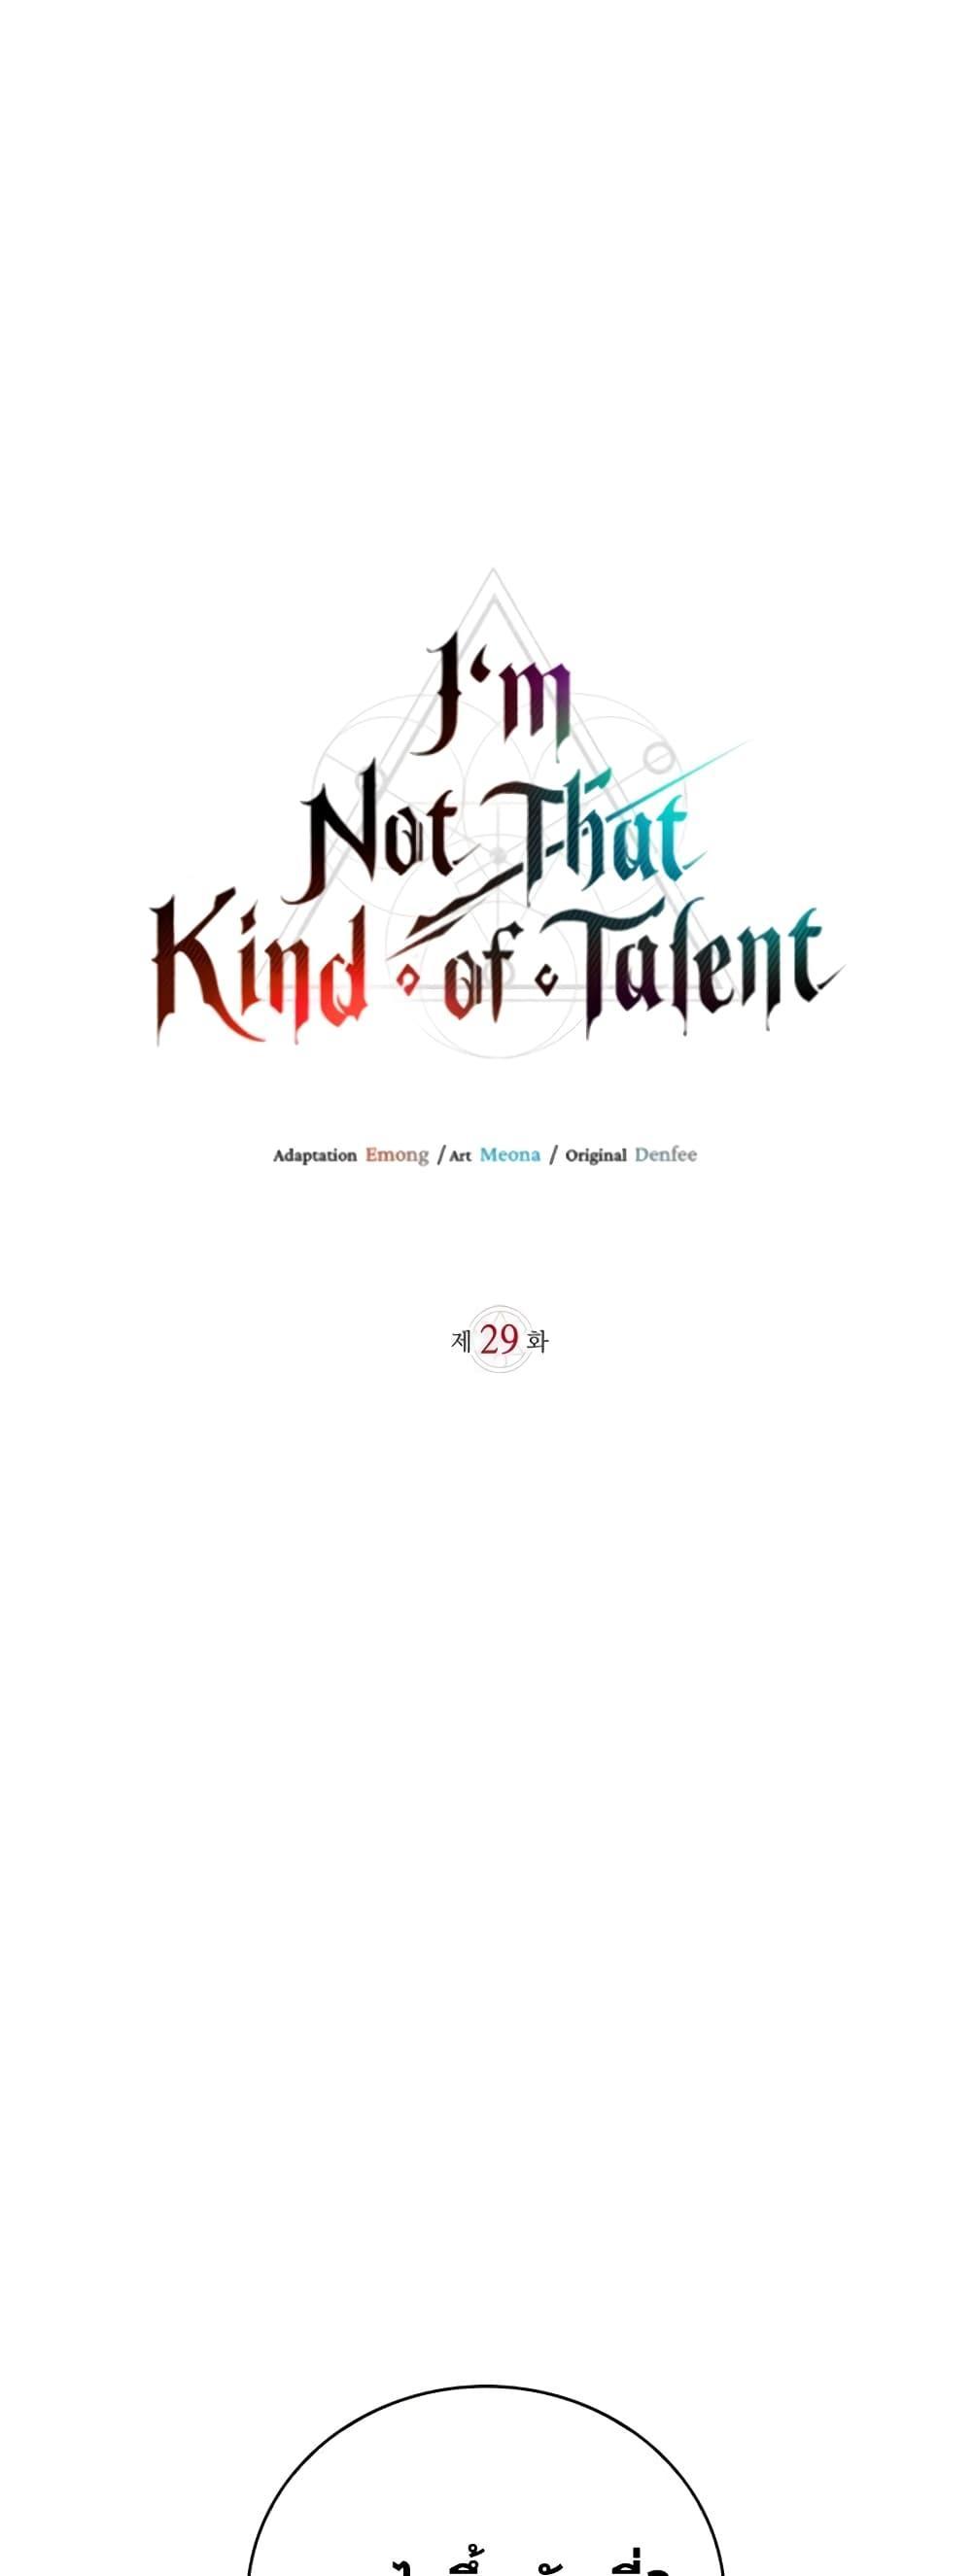 Iโ€m Not That Kind of Talent 29 02